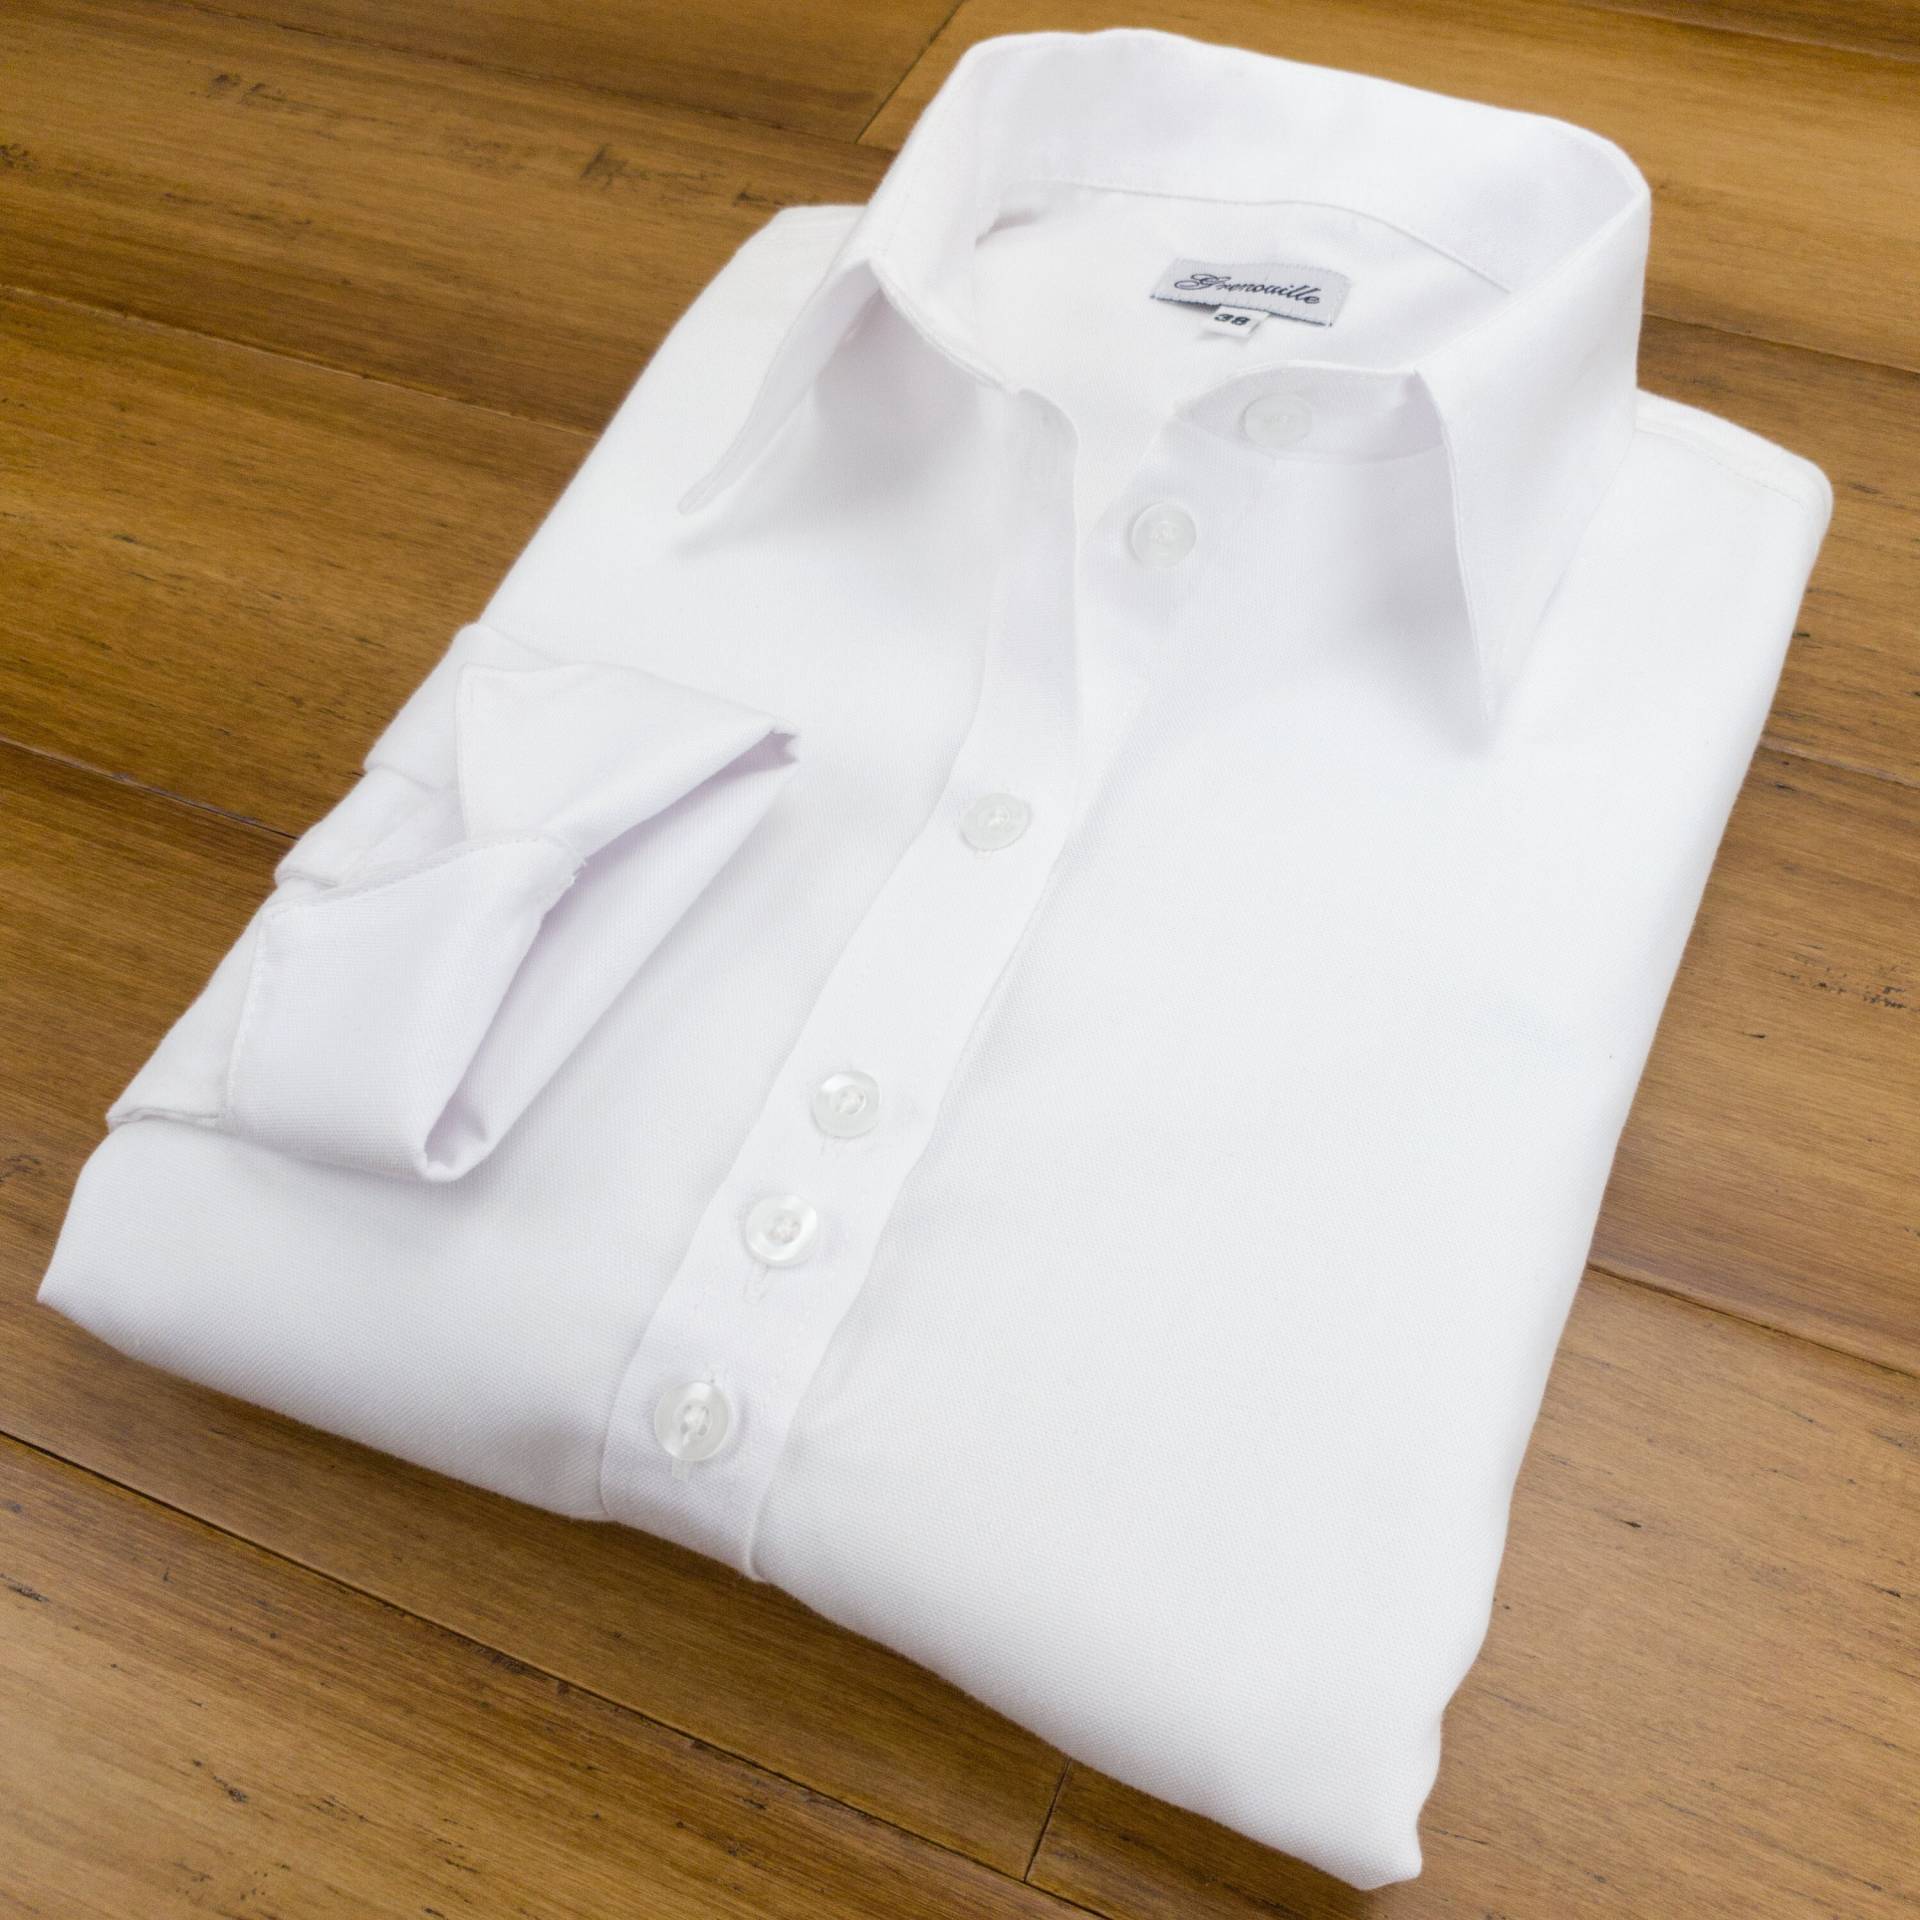 Grenouille Damen Langarm Weiß Oxford Hemd | Signature Shirts Muttertag/Geburtstagsgeschenk von SalamanderShirts